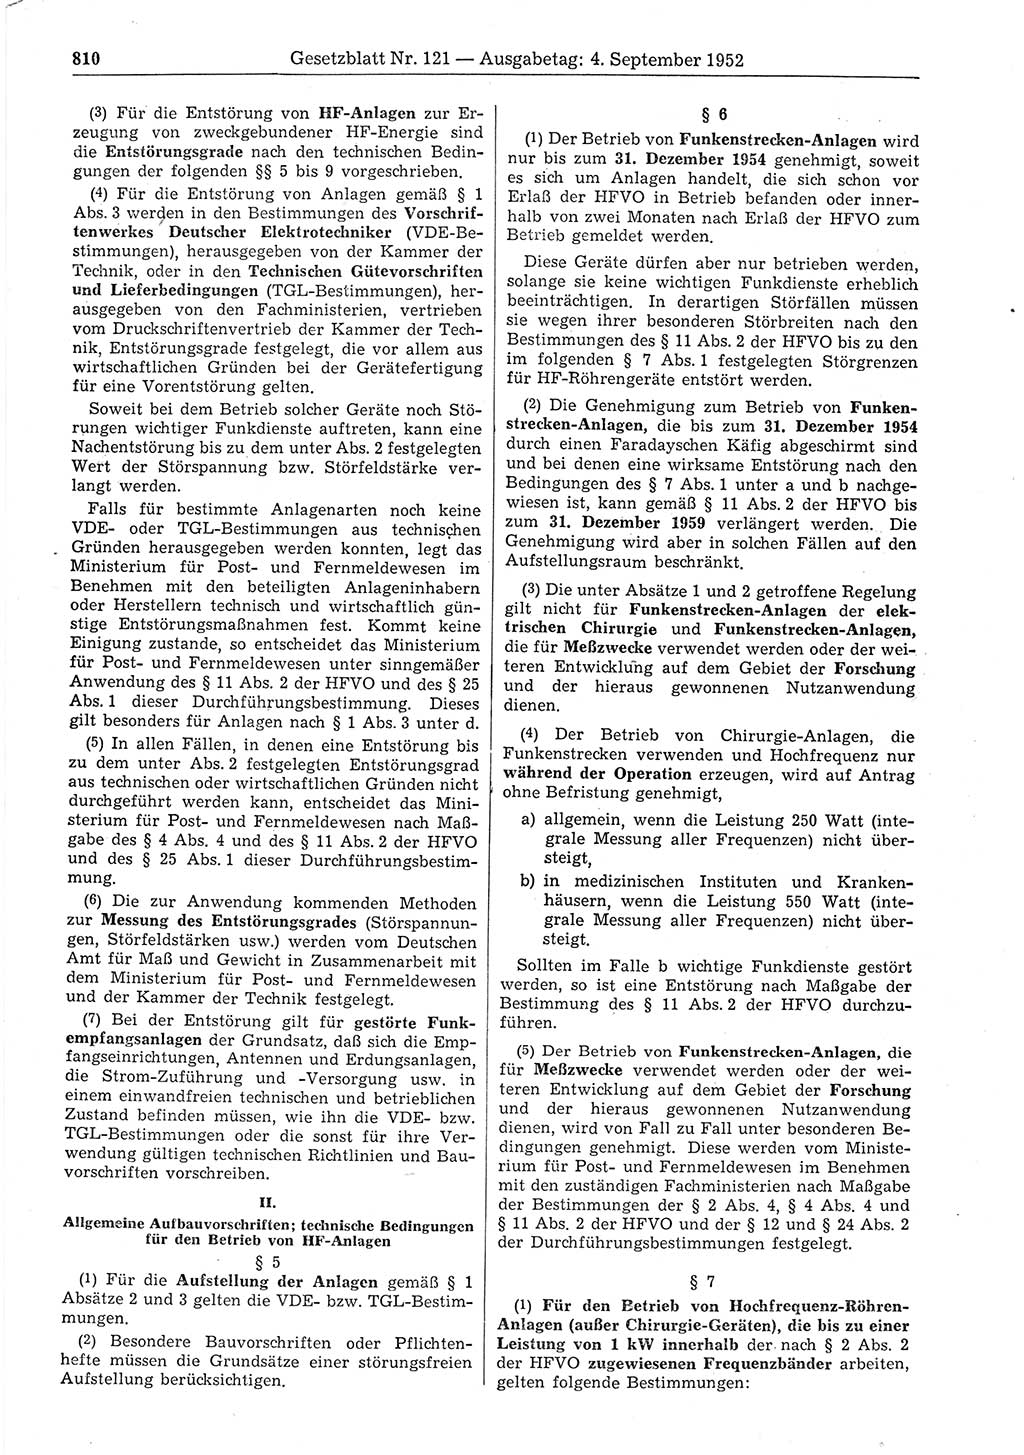 Gesetzblatt (GBl.) der Deutschen Demokratischen Republik (DDR) 1952, Seite 810 (GBl. DDR 1952, S. 810)